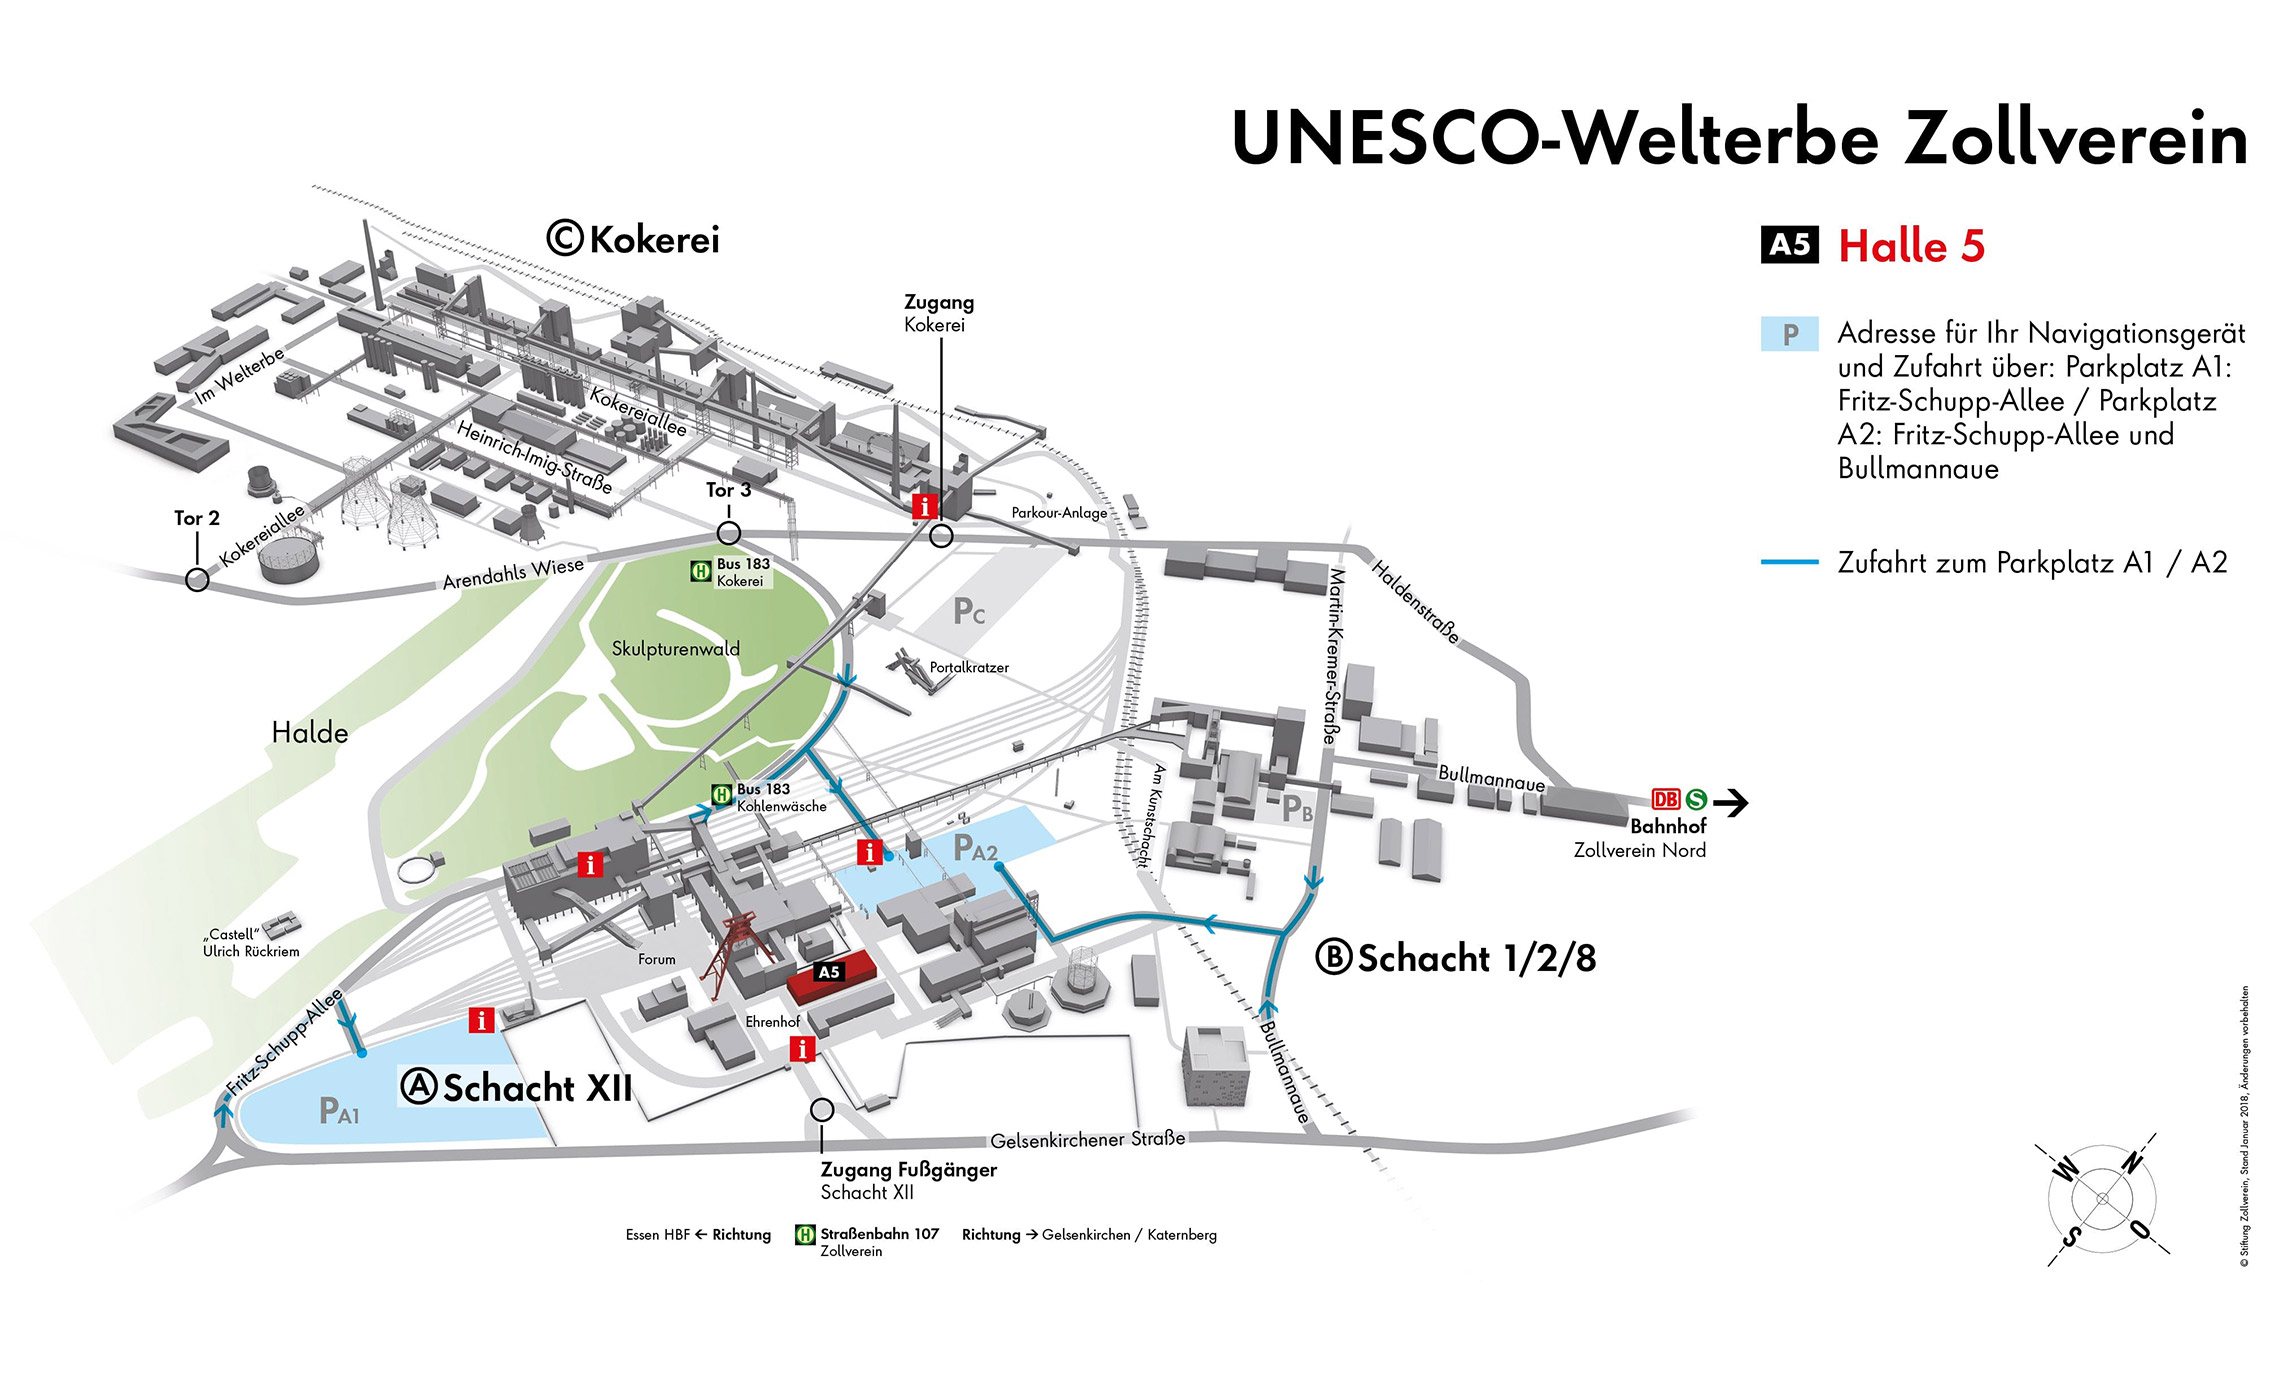 Dieses Bild zeigt die Zufahrt zur Halle 5 auf dem Unesco-Weltkulturerbe Zollverein.